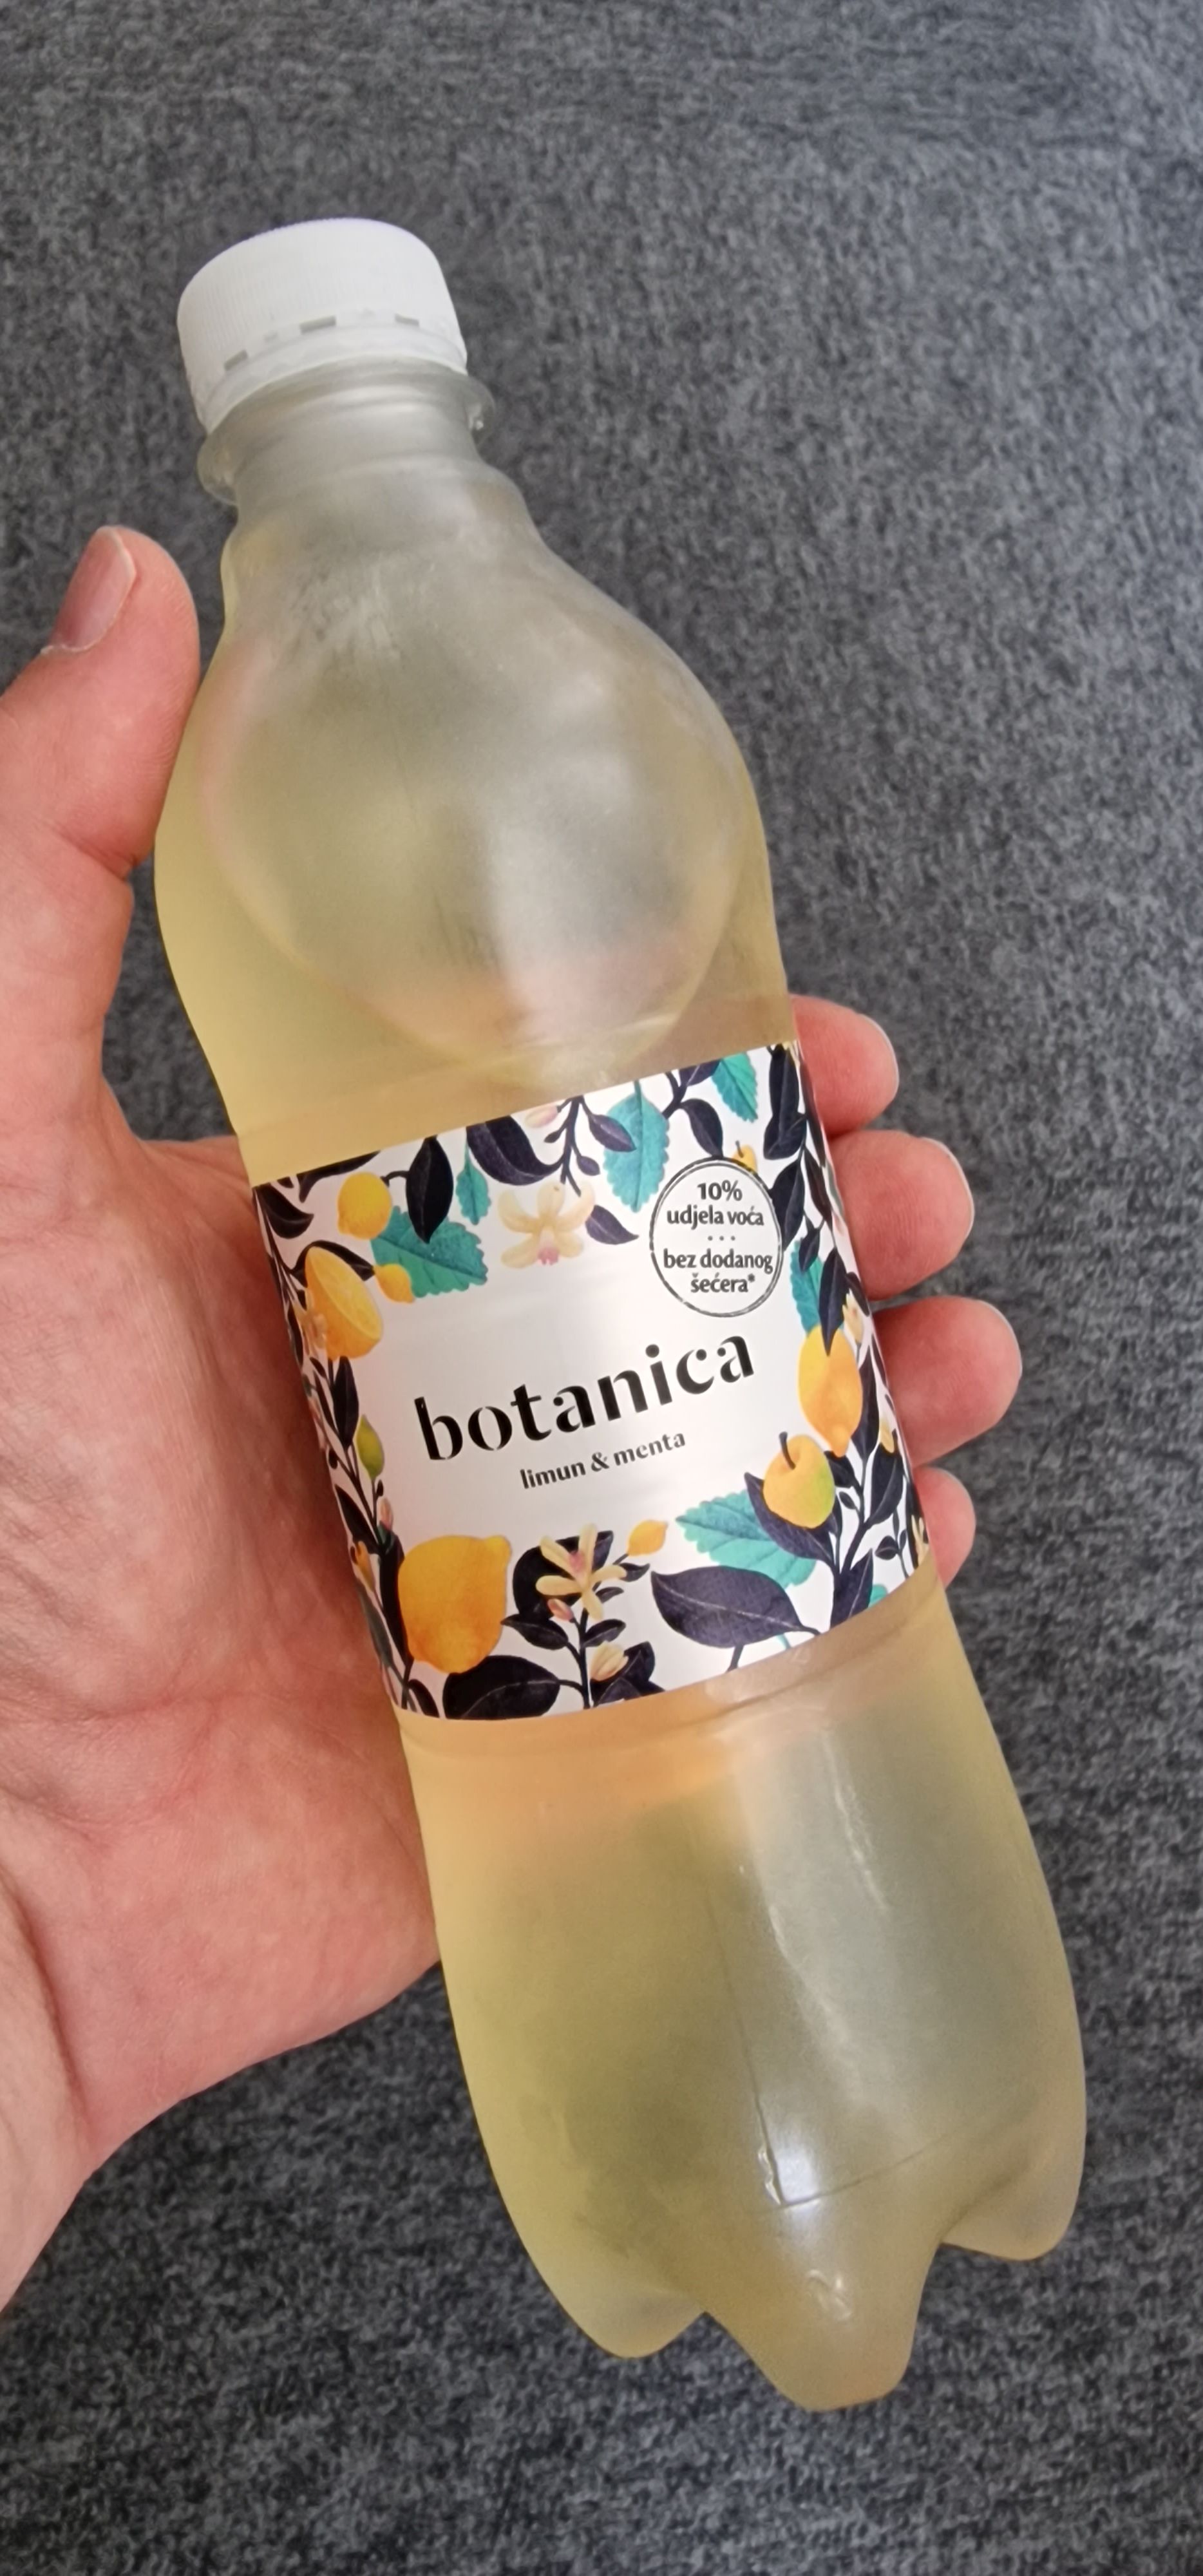 botanica – limun & menta